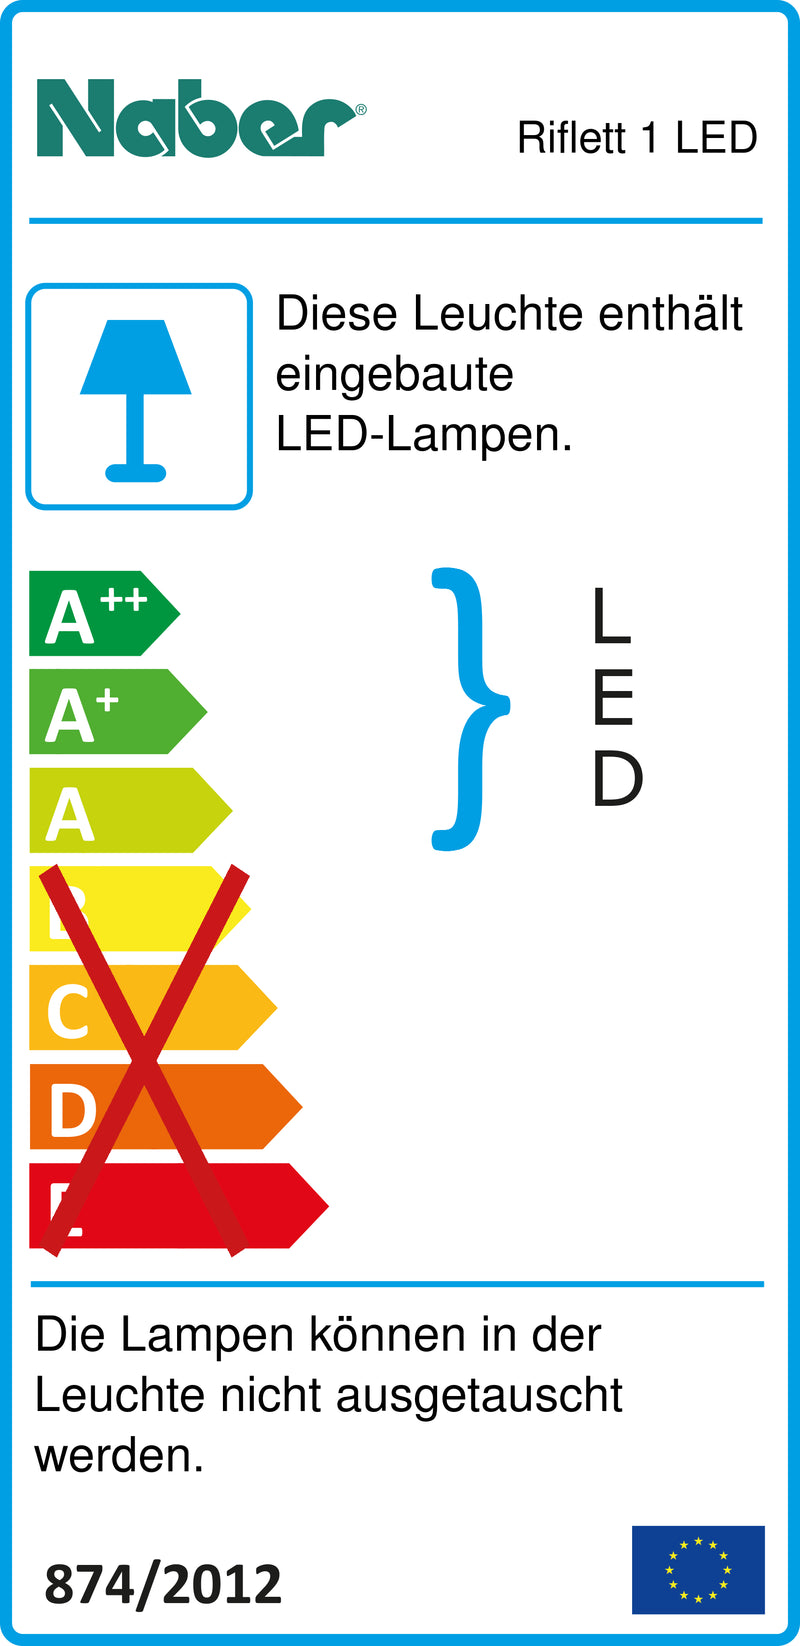 E-Label zu Zeichnung zu Riflett 1 LED als Variante Set-3, 4000 K neutralweiß von Naber GmbH in der Kategorie Lichttechnik in Österreich auf conceptshop.at